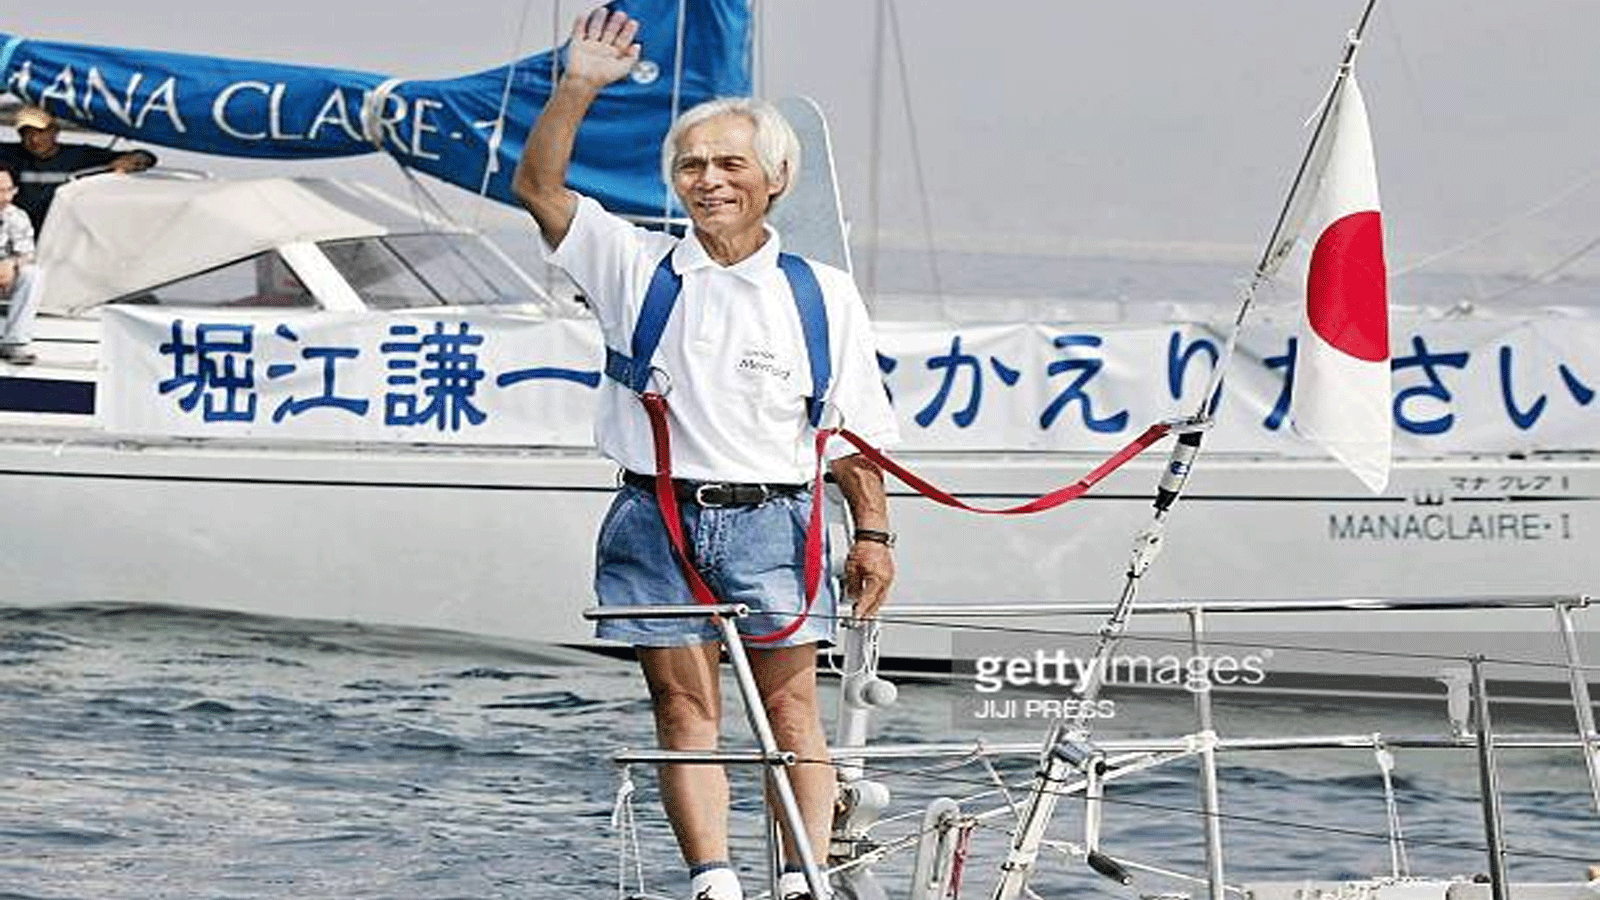  كينيتشي هوري بحّار ياباني يبلغ 83 عاماً يصل إلى اليابان بعدما عبر المحيط الهادي منفرداً ومن دون توقف 